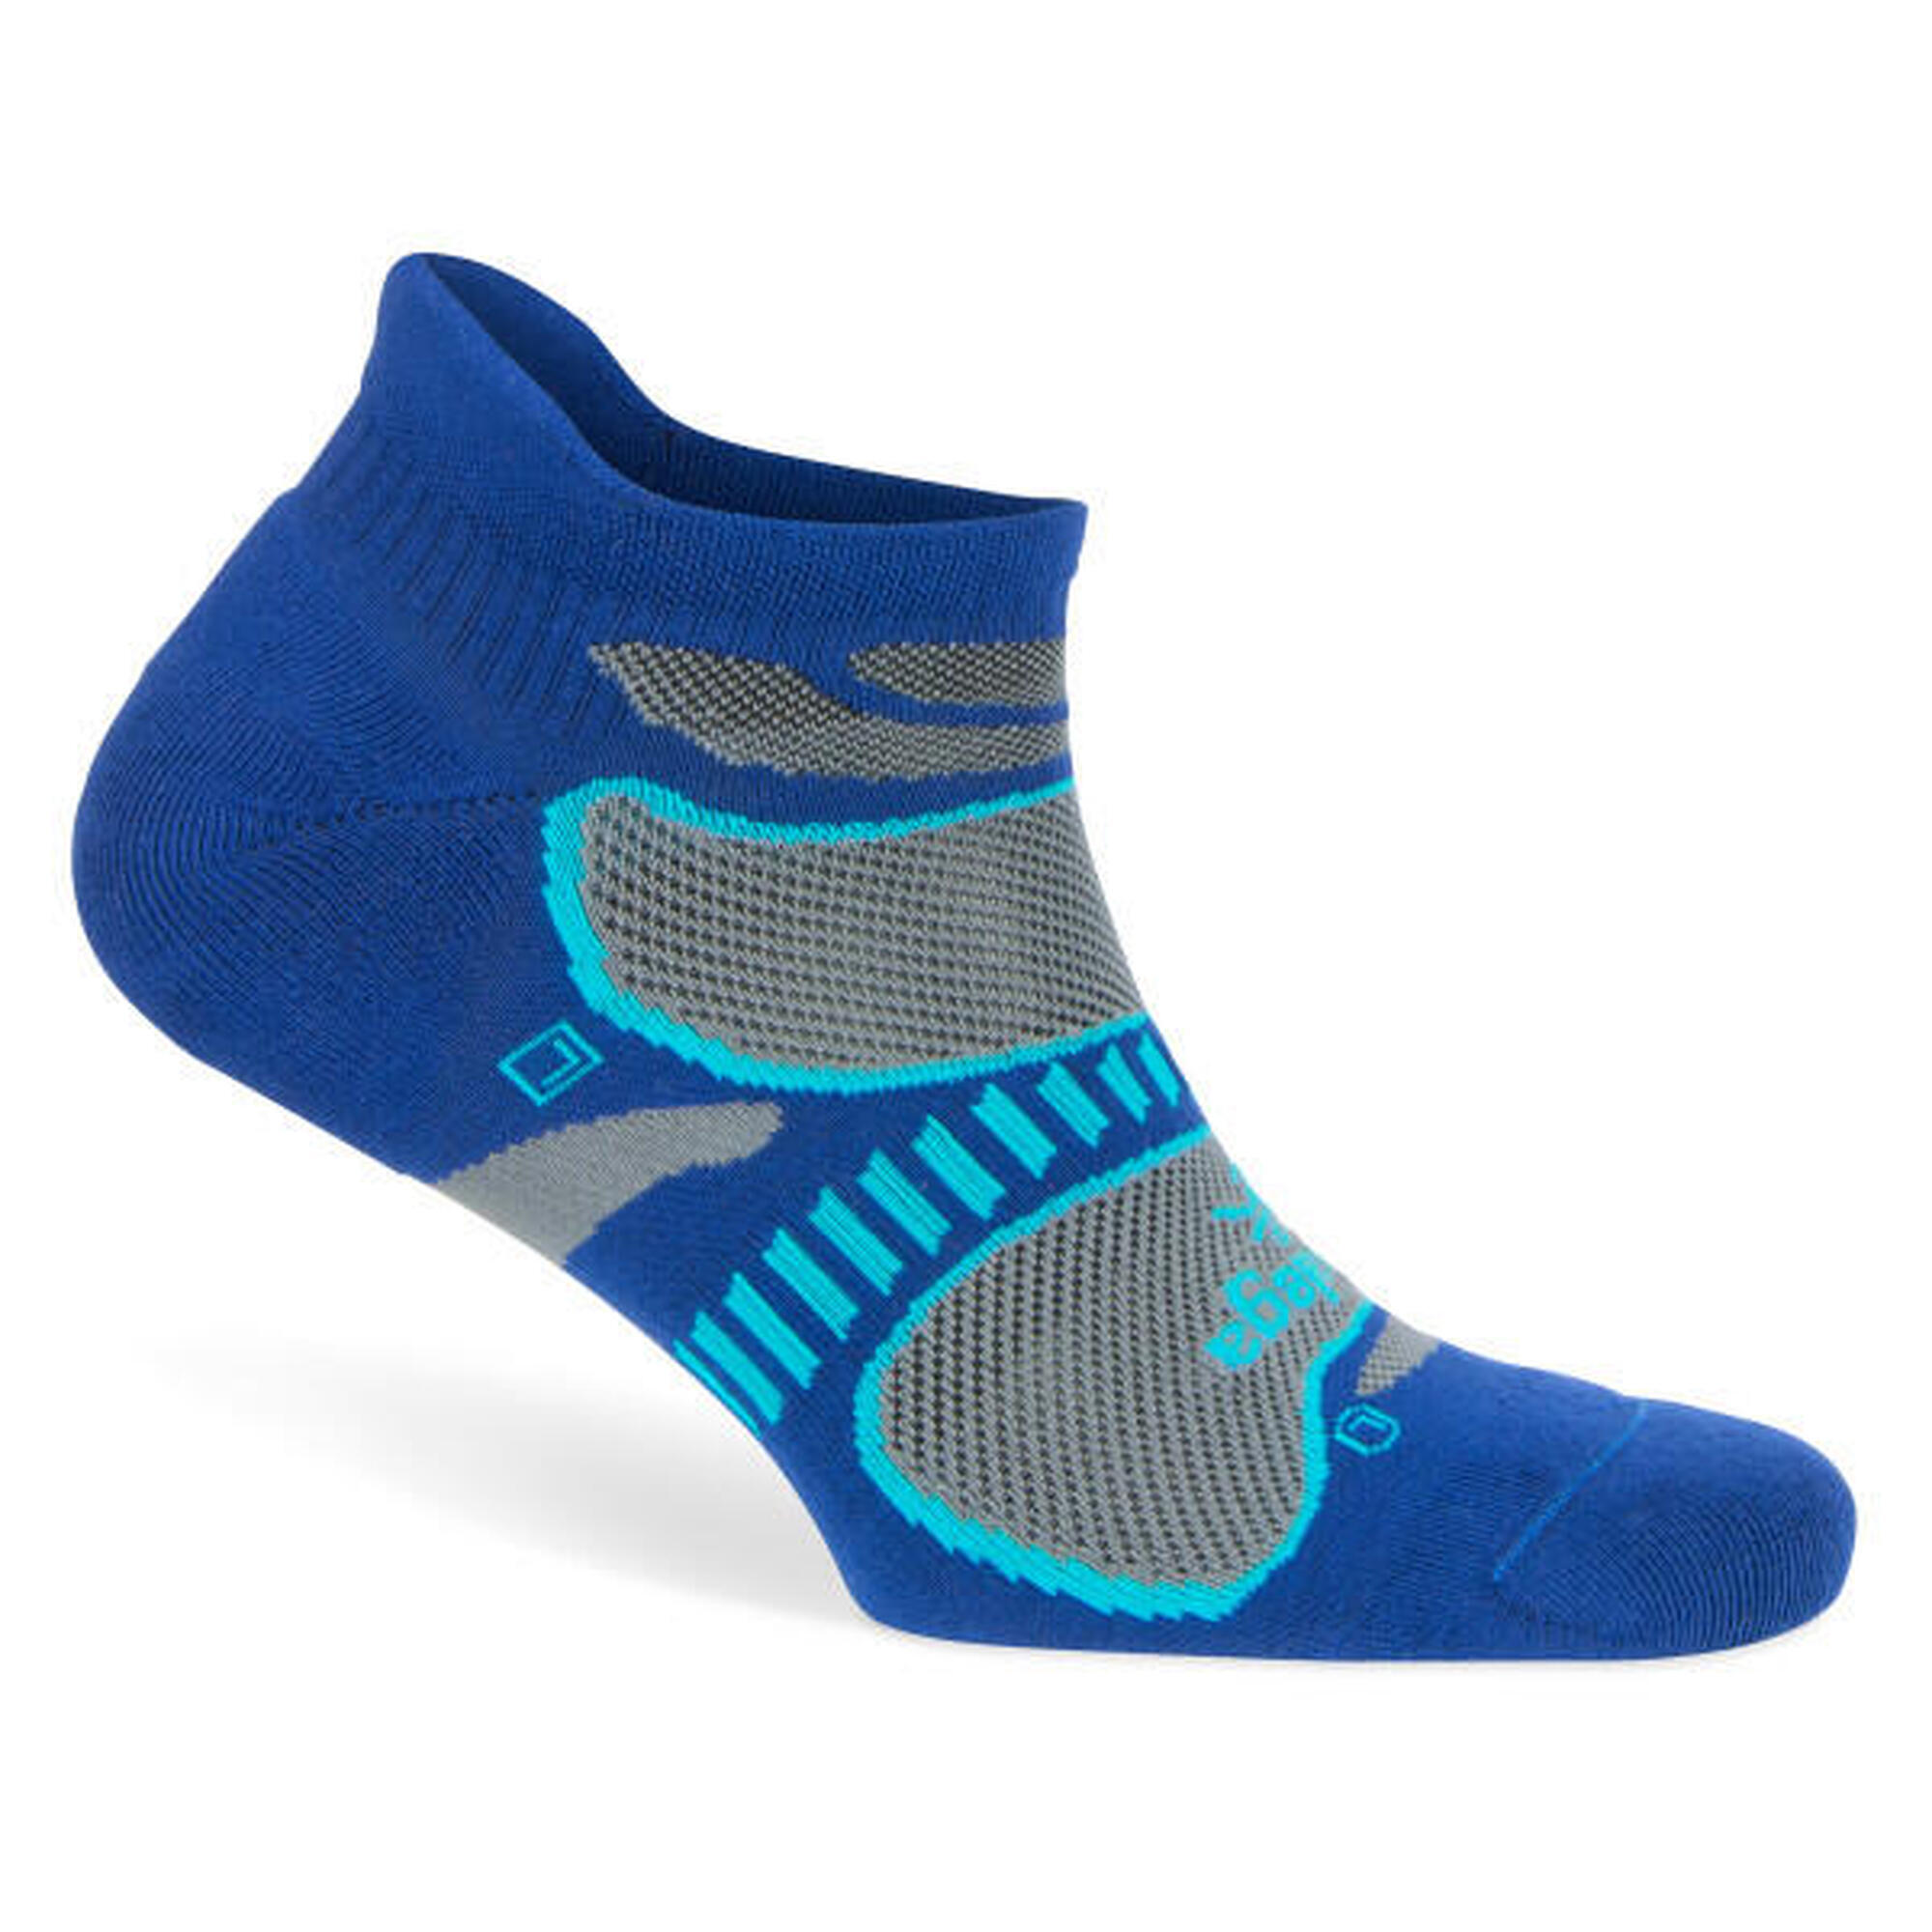 Balega running calcetines: Ligereza, control de la humedad y confort Talla M